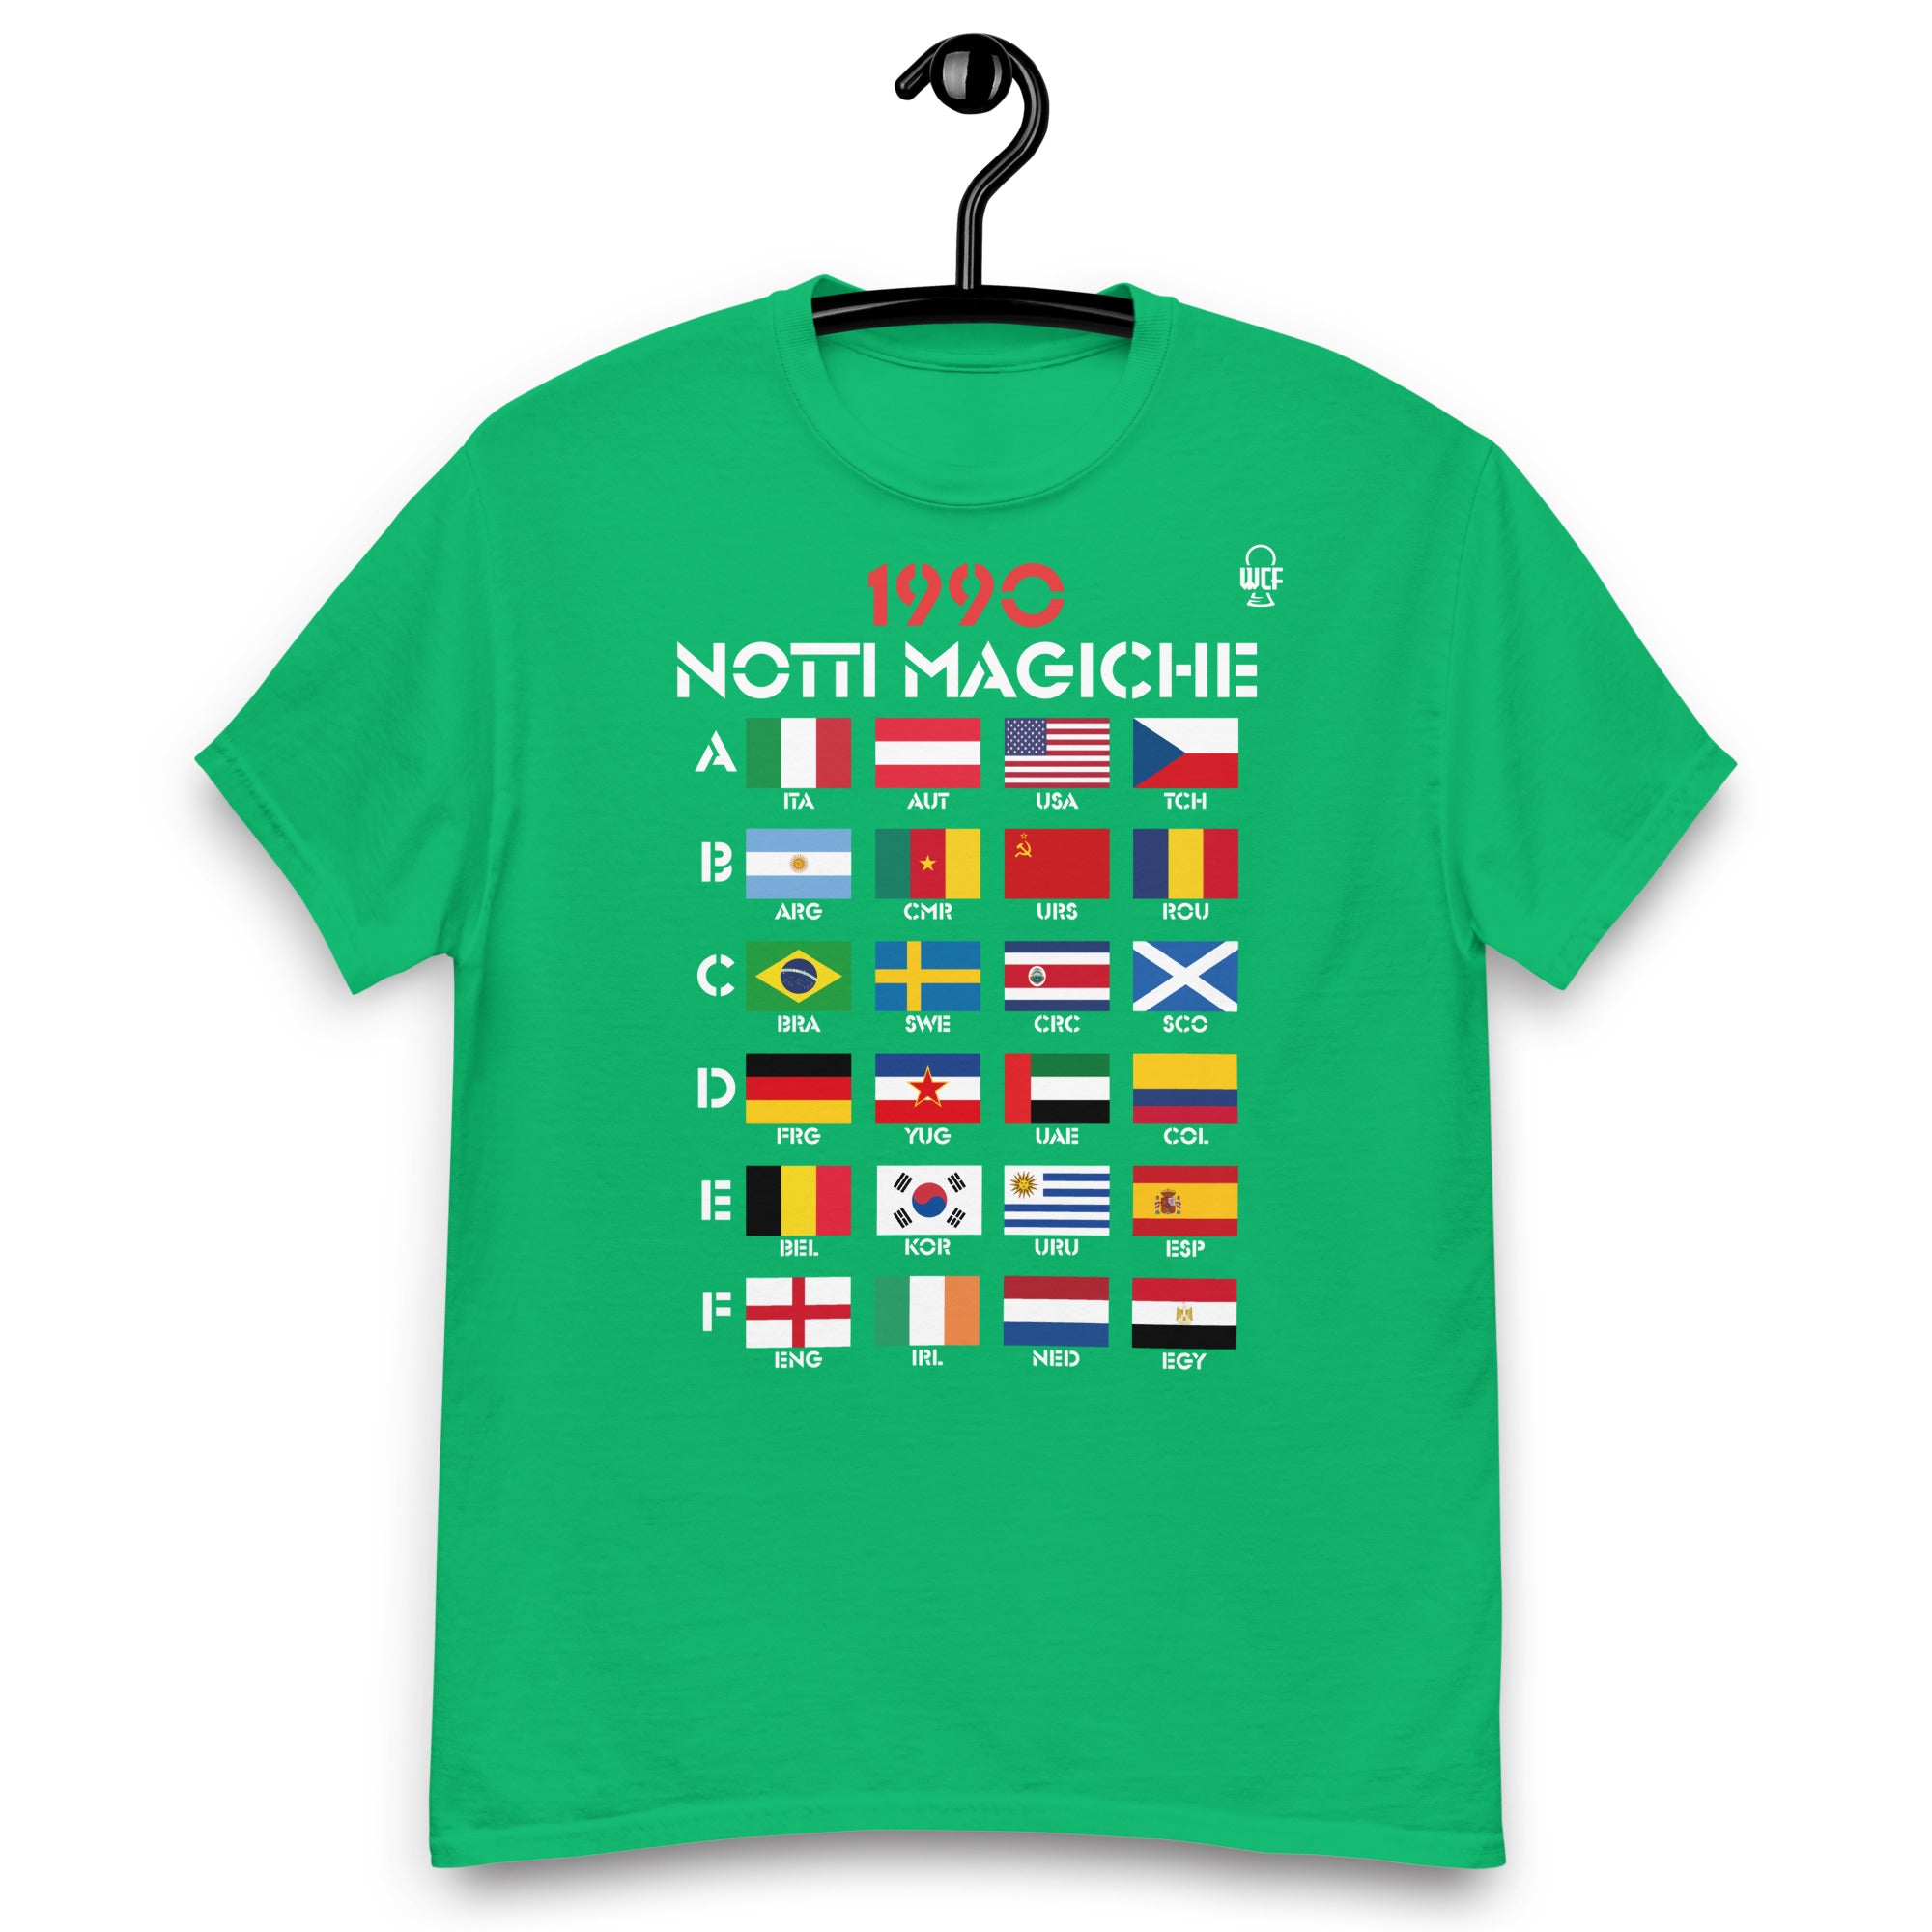 FIFA World Cup Italia 1990 Classic T-Shirt - NOTTI MAGICHE